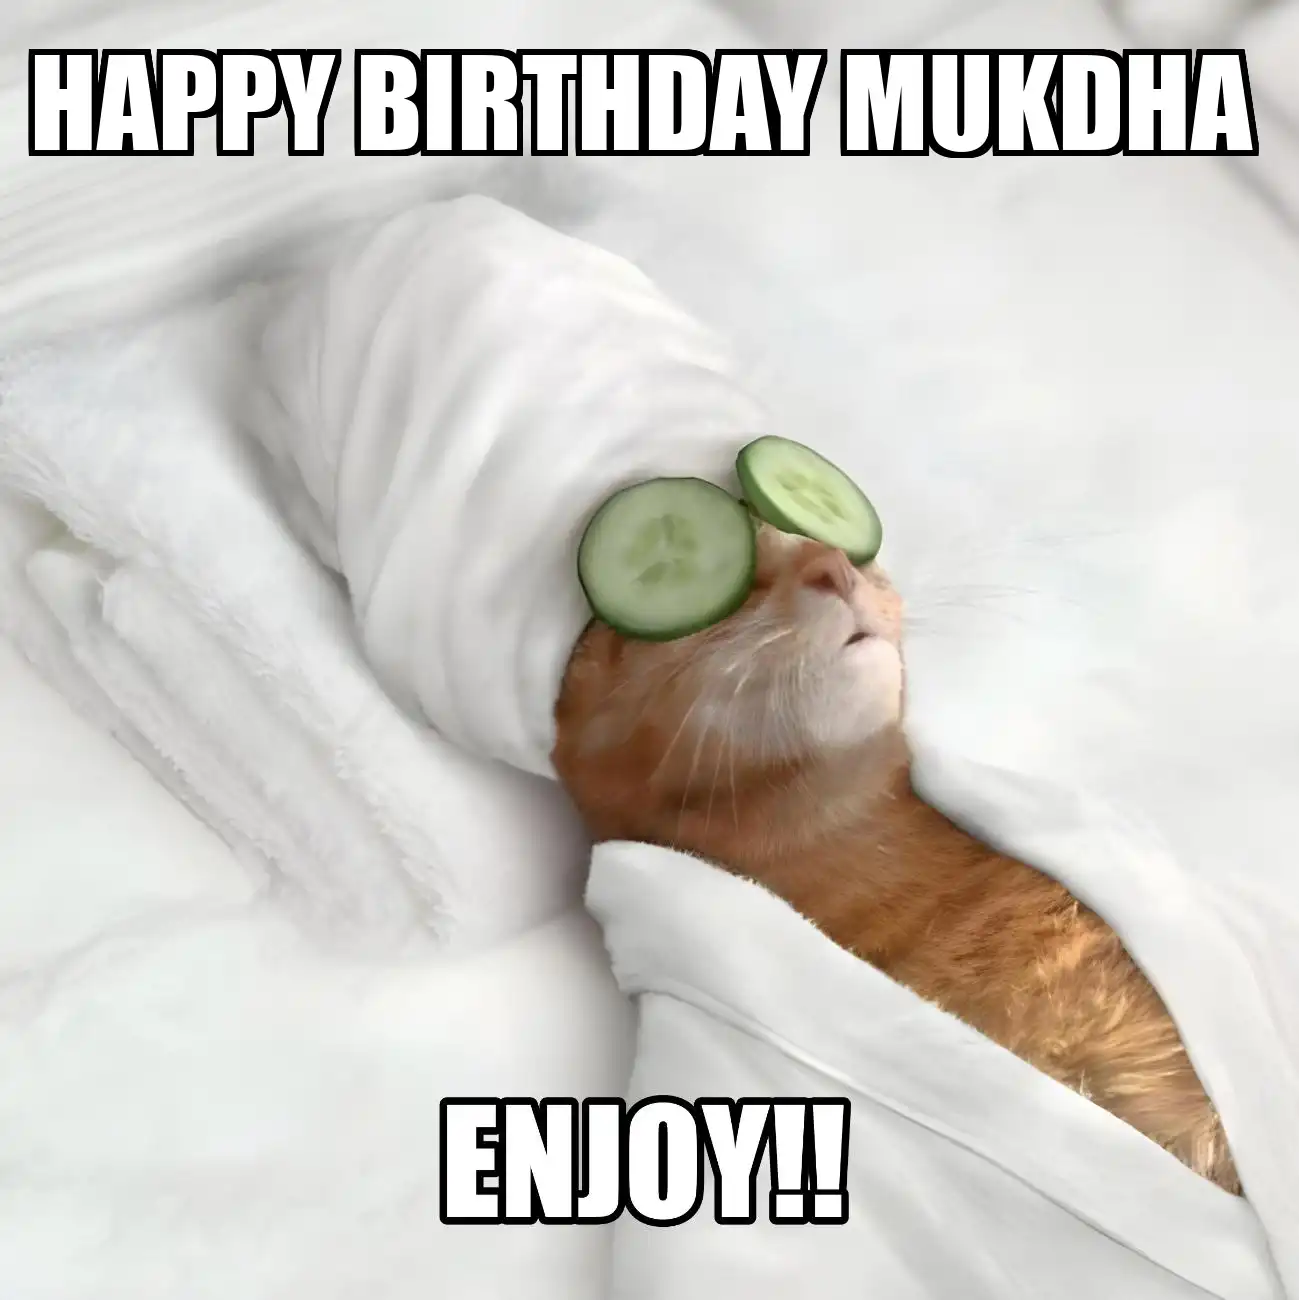 Happy Birthday Mukdha Enjoy Cat Meme